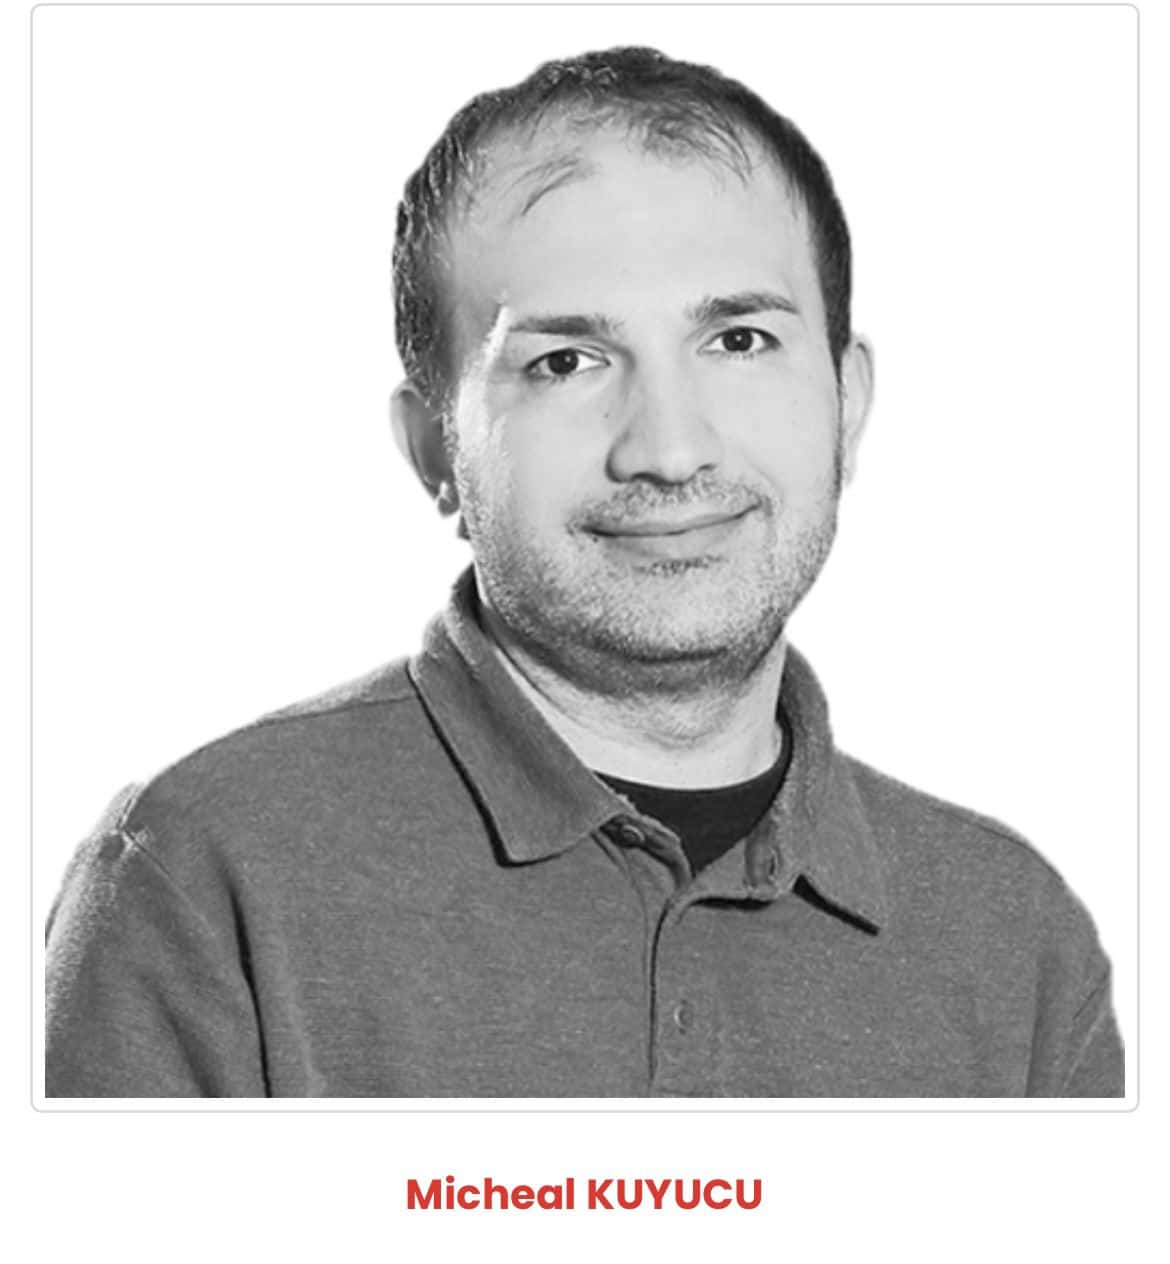 Michael Kuyucu